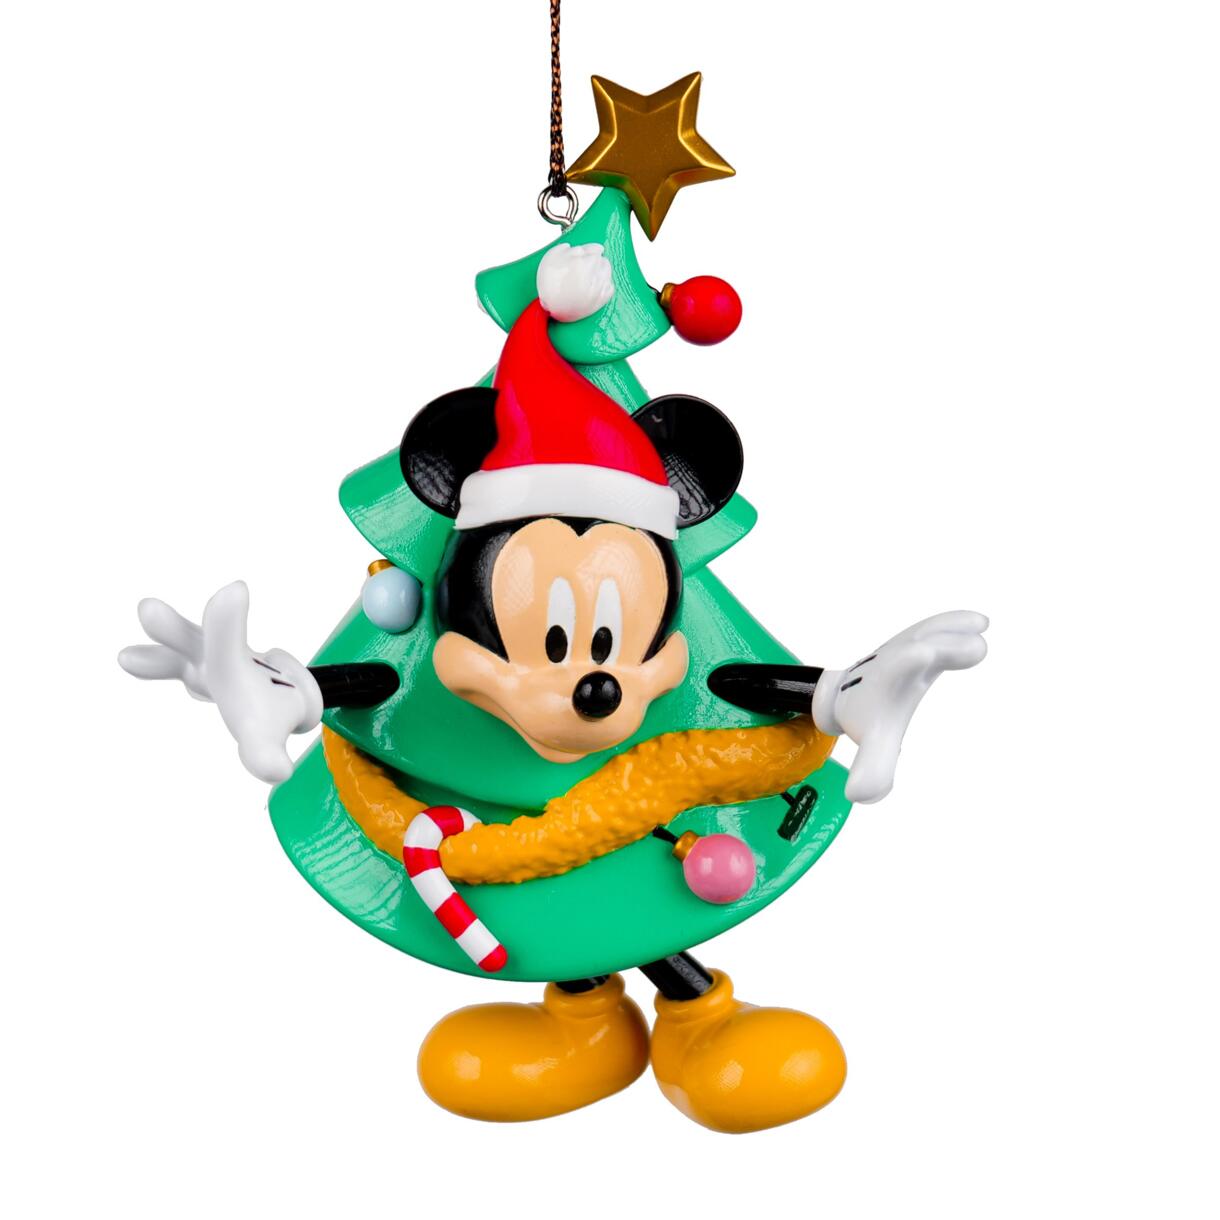 Feest hangdecoratie Disney Mickey met kerstboom Groen 1